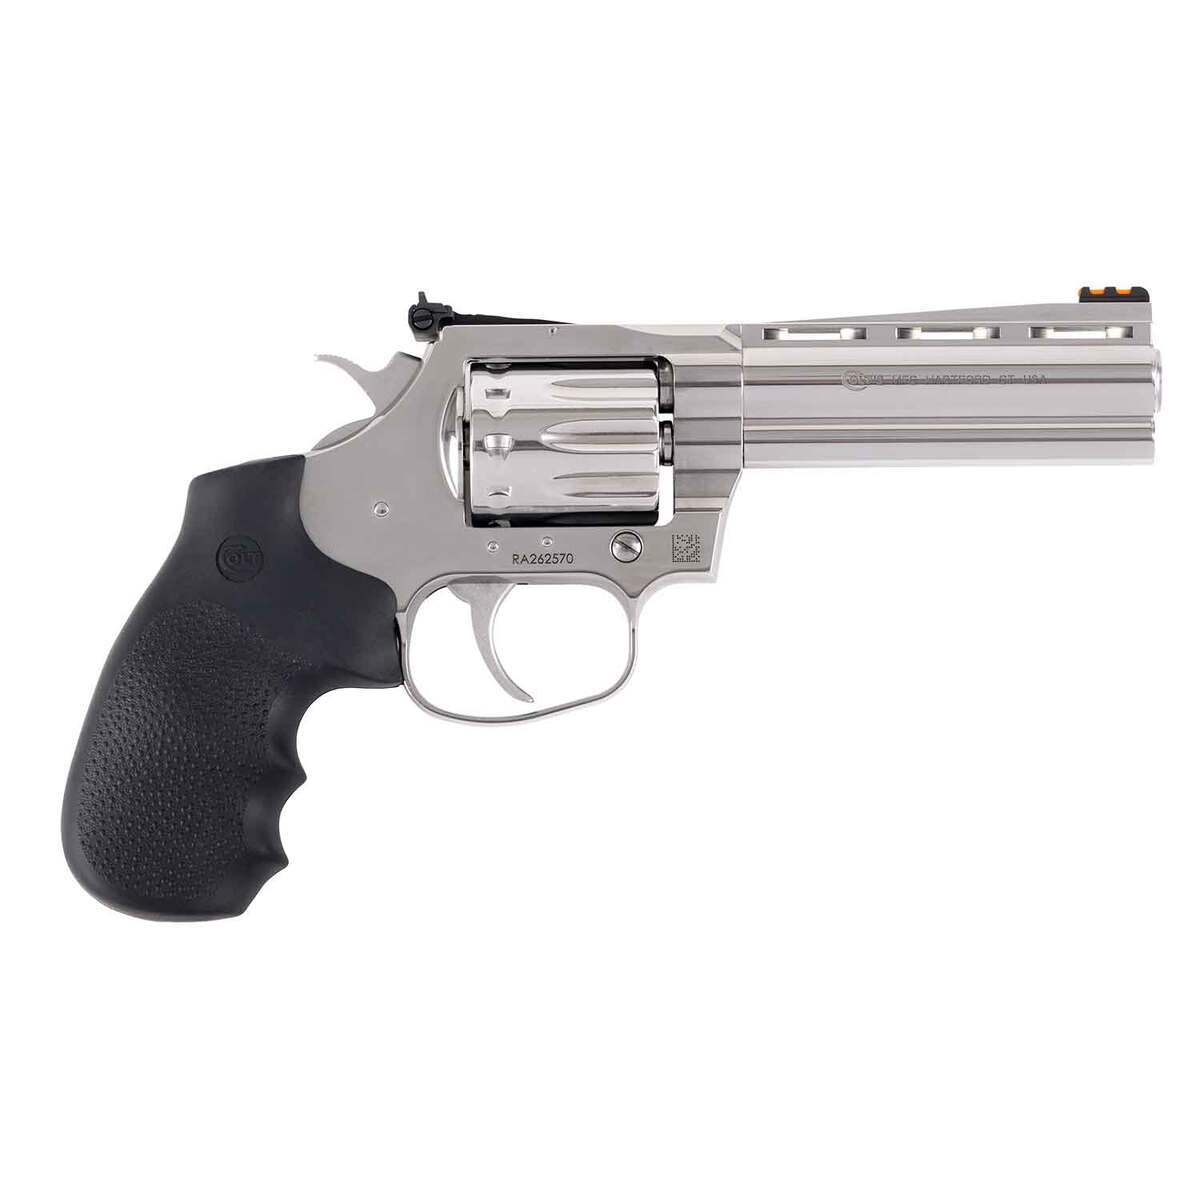 https://www.sportsmans.com/medias/colt-king-cobra-22-long-rifle-425in-stainless-steel-revolver-10-rounds-1755488-1.jpg?context=bWFzdGVyfGltYWdlc3w0NDQzM3xpbWFnZS9qcGVnfGhiMS9oYzkvMTA4ODQzNjkxNTQwNzgvMTc1NTQ4OC0xX2Jhc2UtY29udmVyc2lvbkZvcm1hdF8xMjAwLWNvbnZlcnNpb25Gb3JtYXR8ZmMyNzFjNzkyNTJhOWU0ZjhmZDdmY2Y4MWVlNGMzMmVkNmU4MTVjMjBhY2QwYTRiZmY2ZTI4ZjYwZjlkMDUwMg